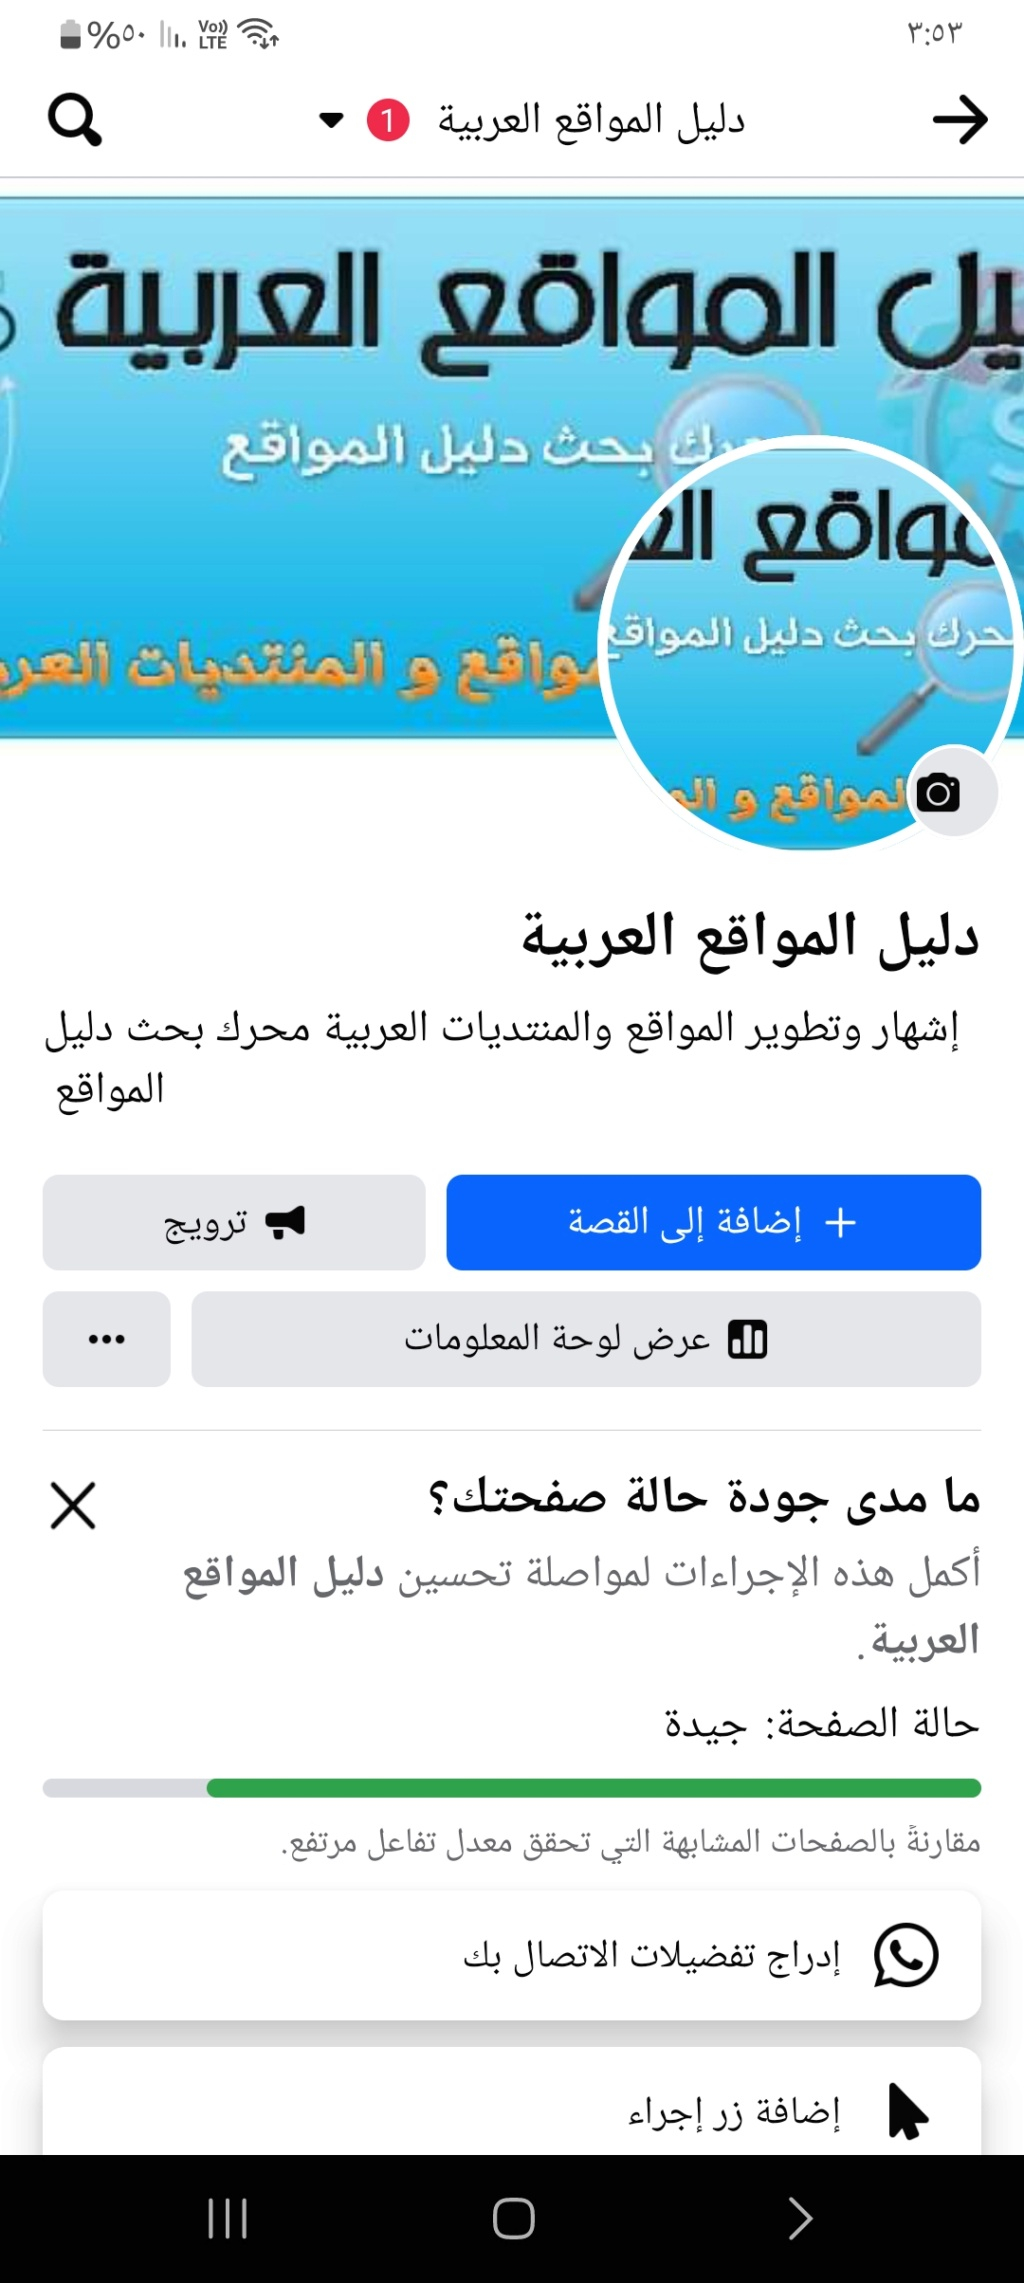 الصفحة الرسمية لموقع دليل المواقع العربية  Screen10